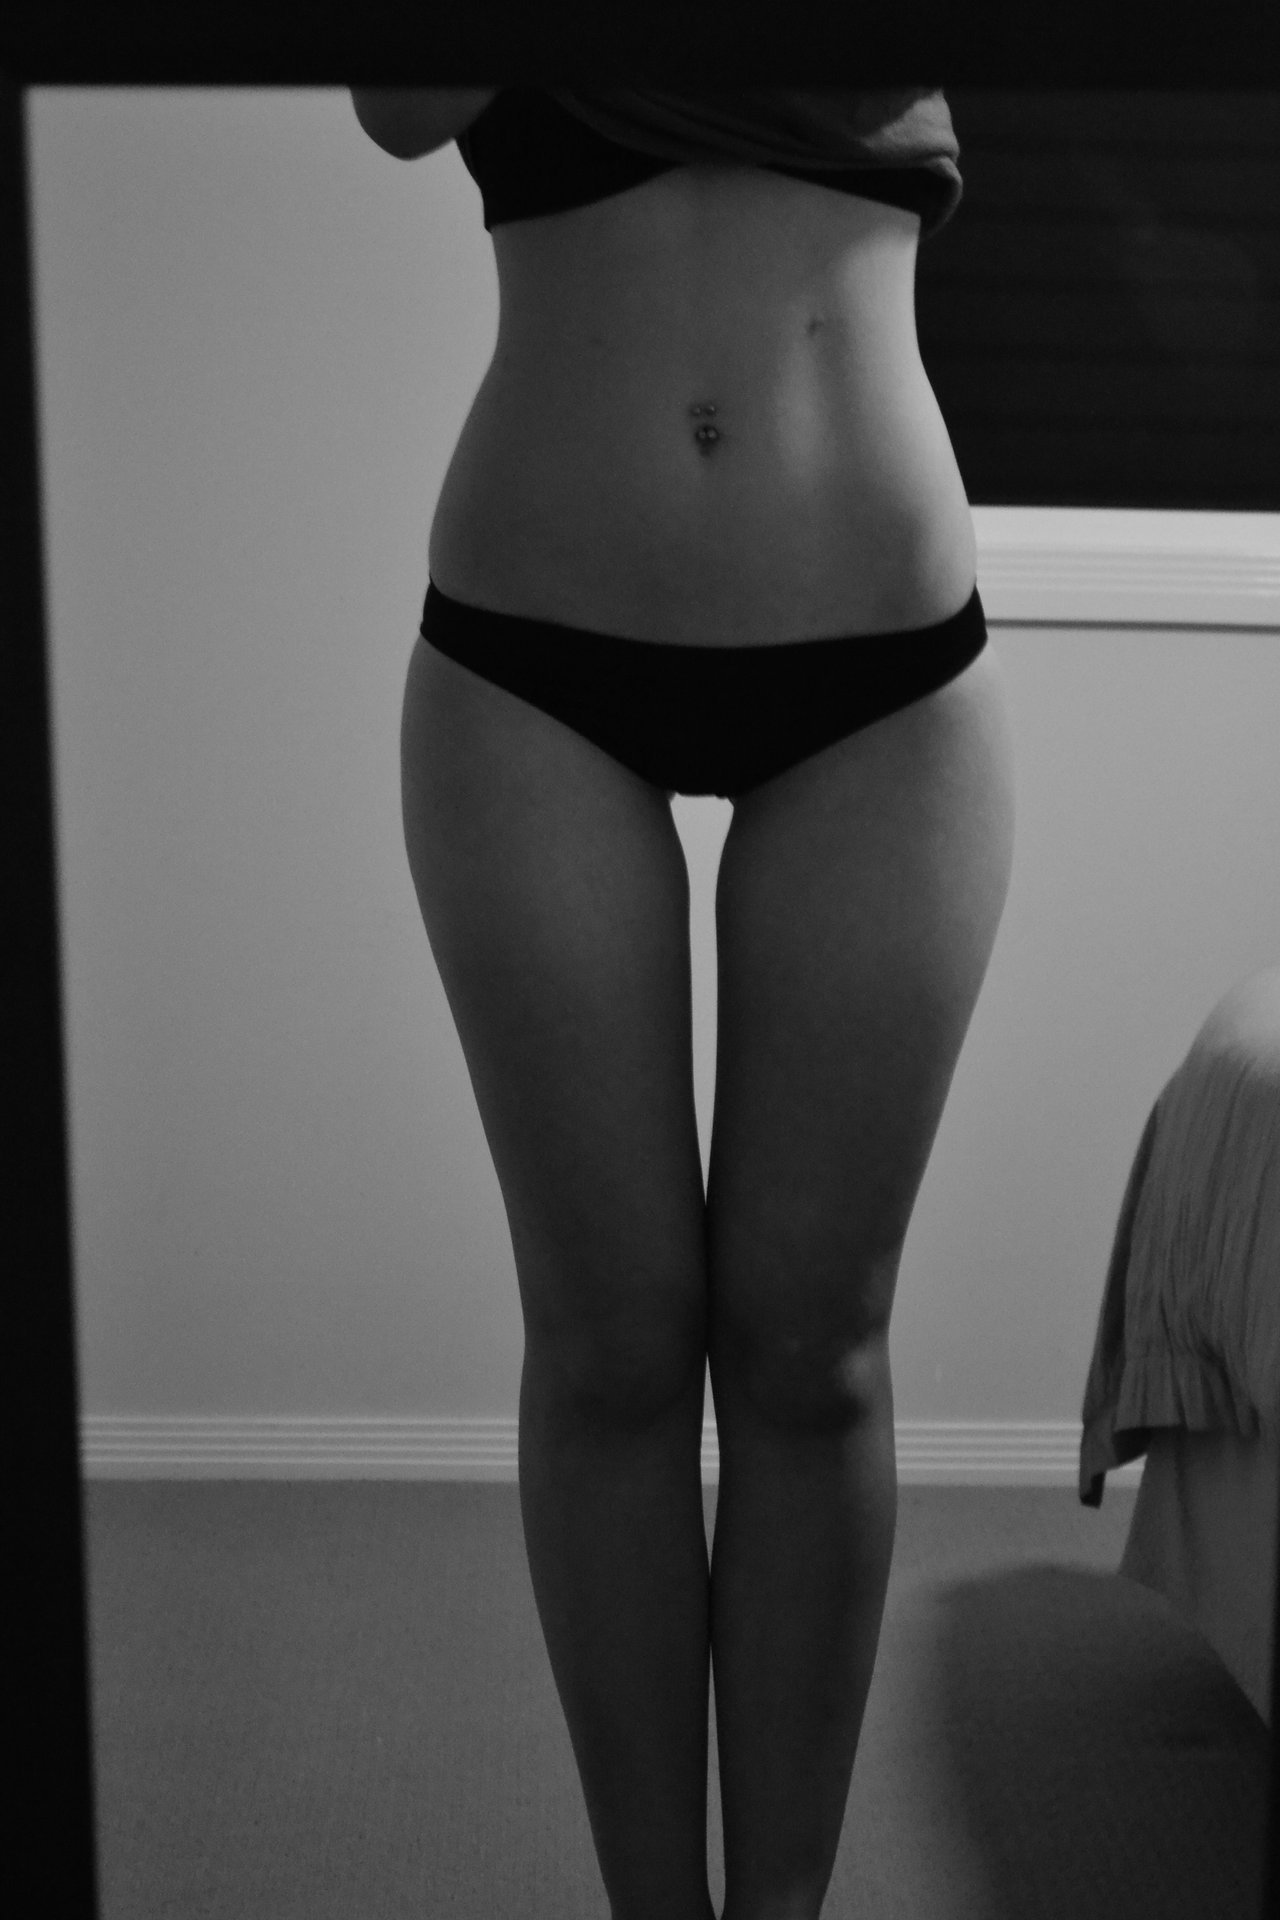 Skinny hips